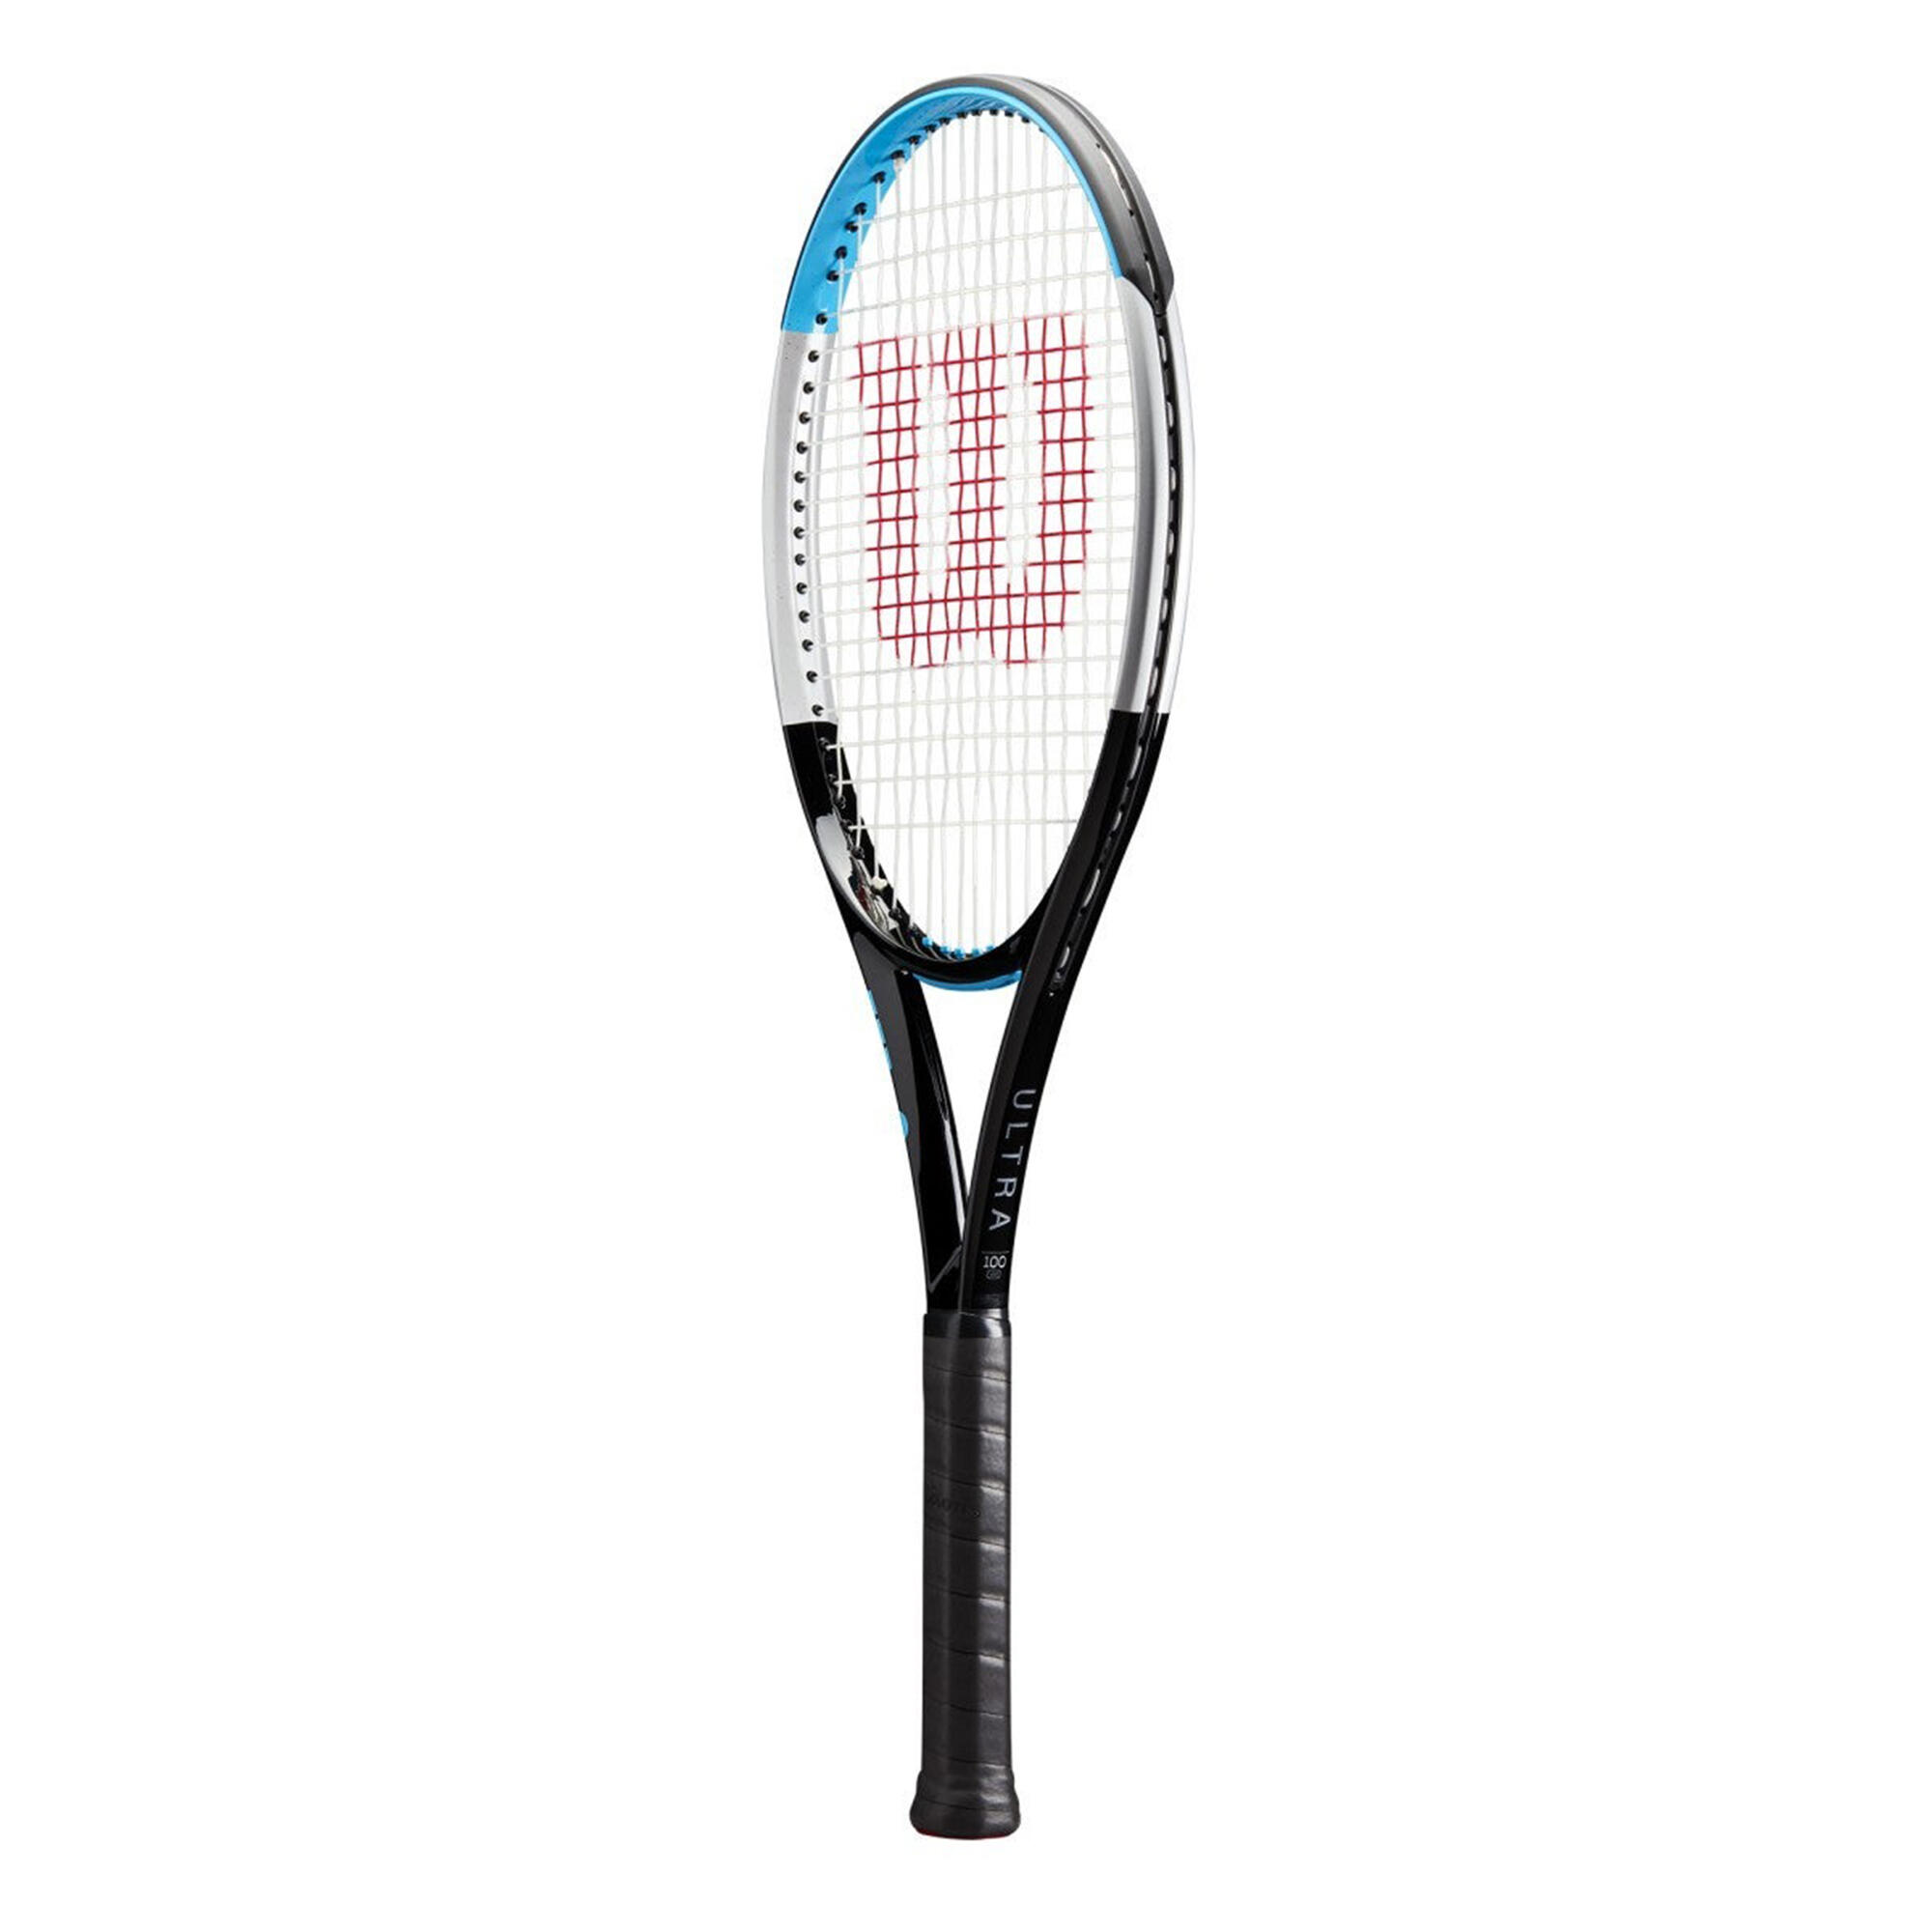 Adult Unstrung Tennis Racket Ultra 100 V3.0 - Black/Blue 2/3